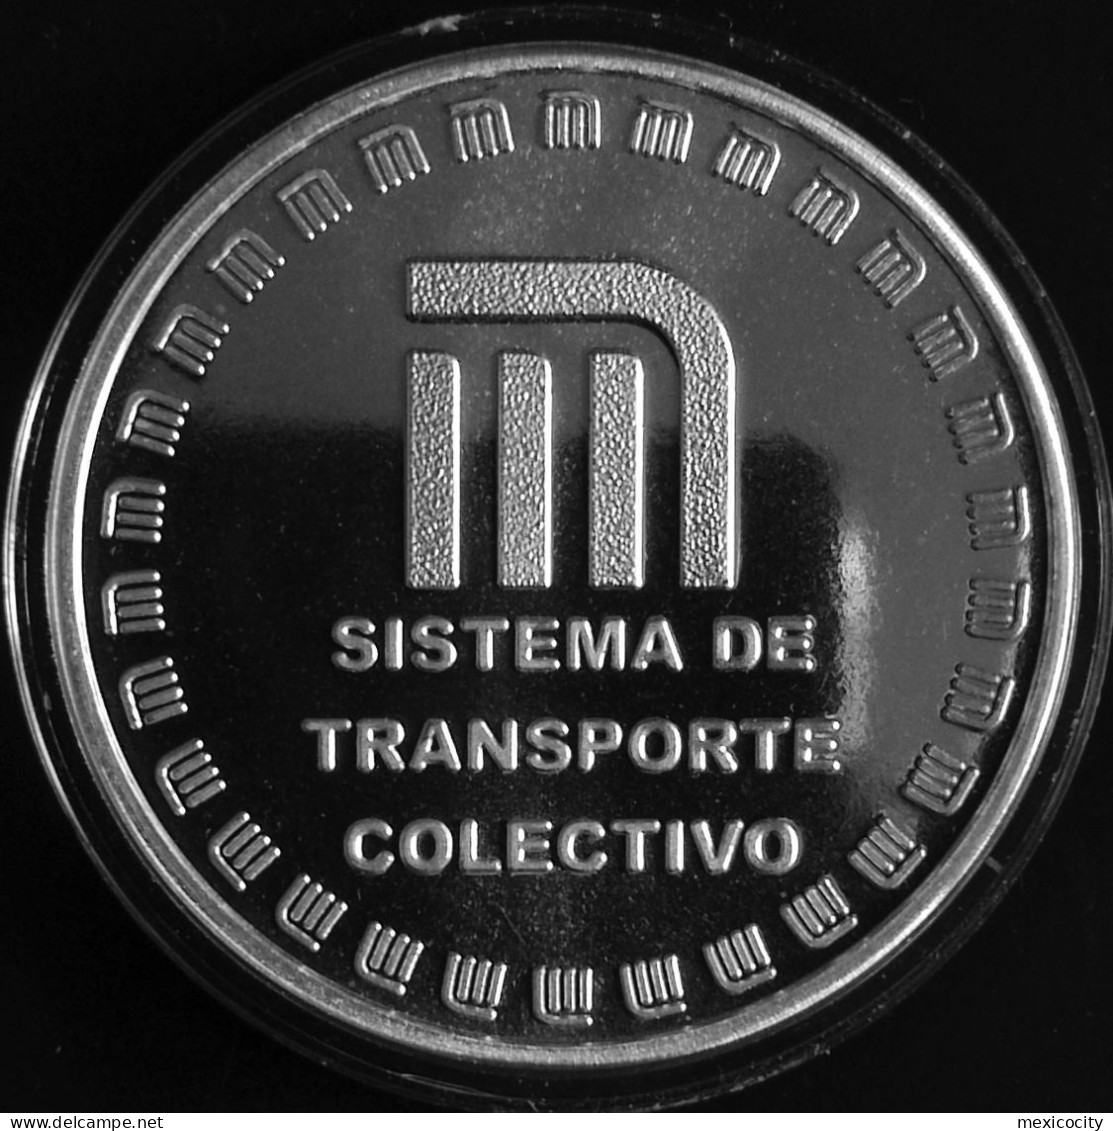 MEXICO 2007 Mex. City SUBWAY Metro Services Award 2 Oz. Silver Piece, See Imgs., Rare & Official - México